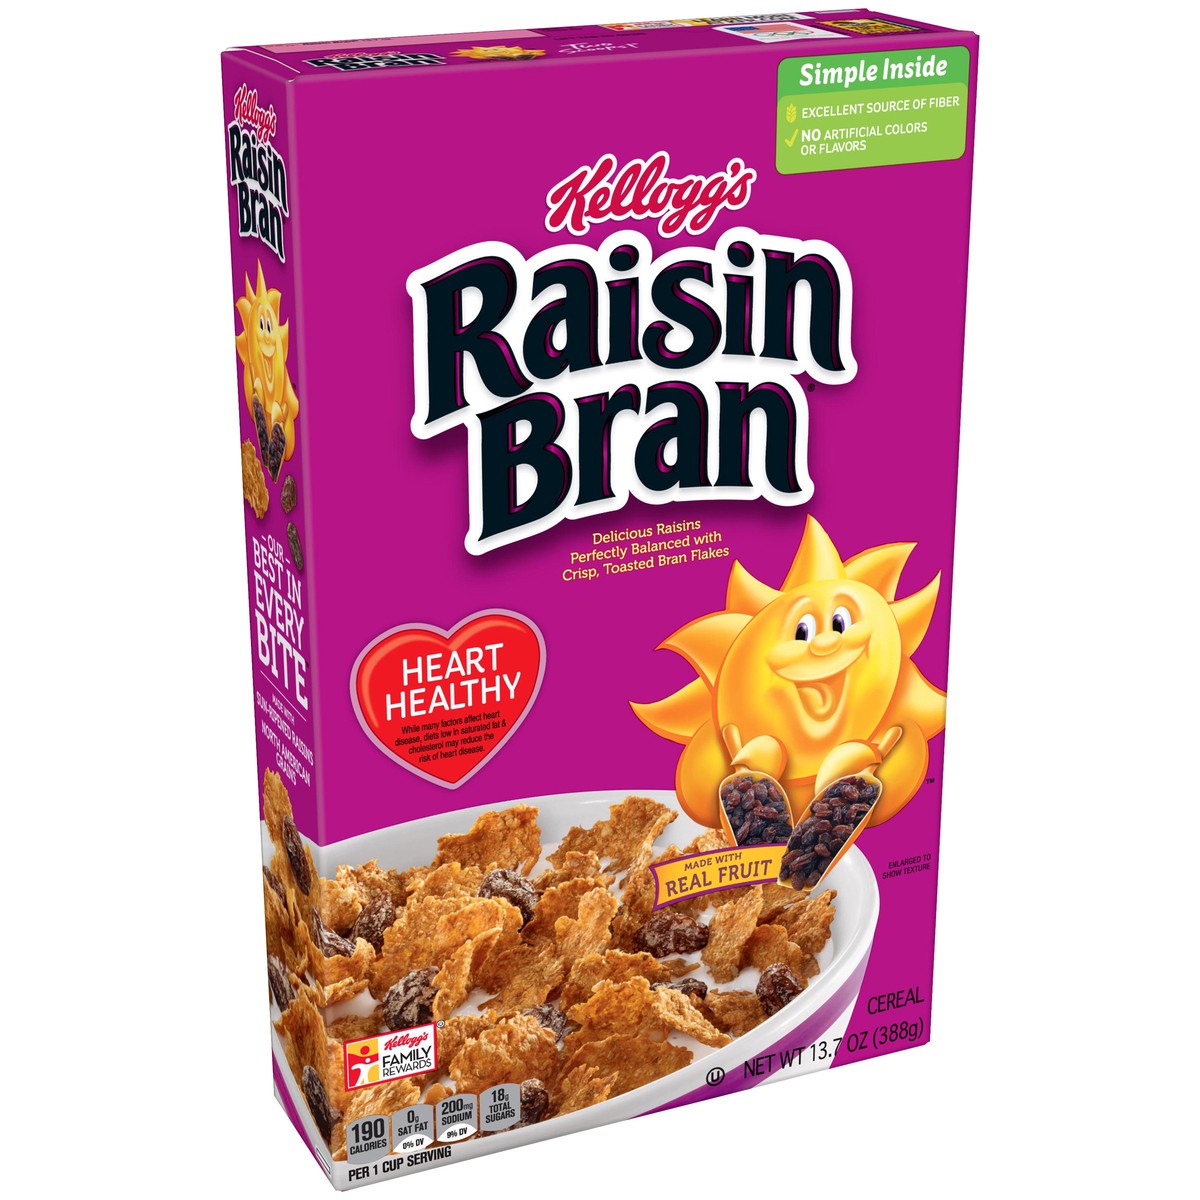 slide 2 of 10, Raisin Bran Breakfast Cereal Original Excellent Source of Fiber, 13.7 oz